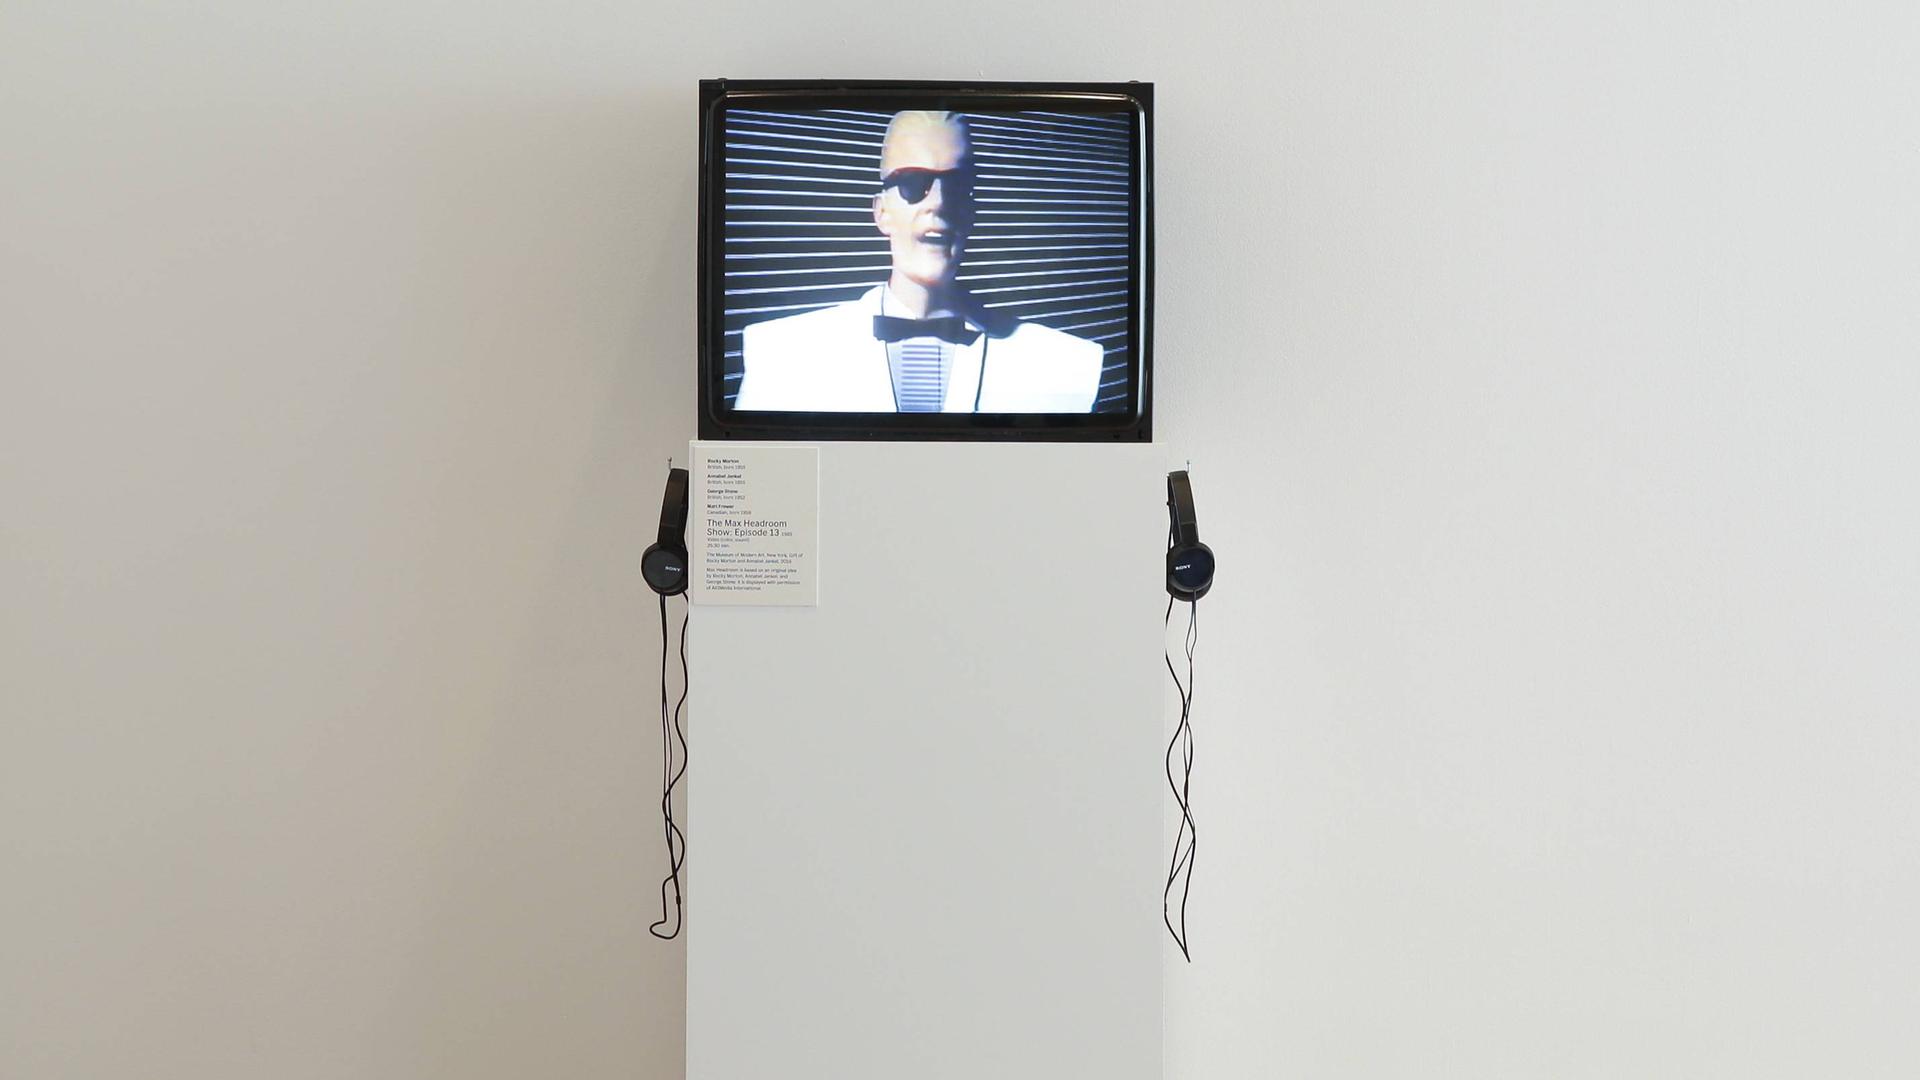 Die TV-Figur "Max Headroom" ist auf einem Bildschirm zu sehen.